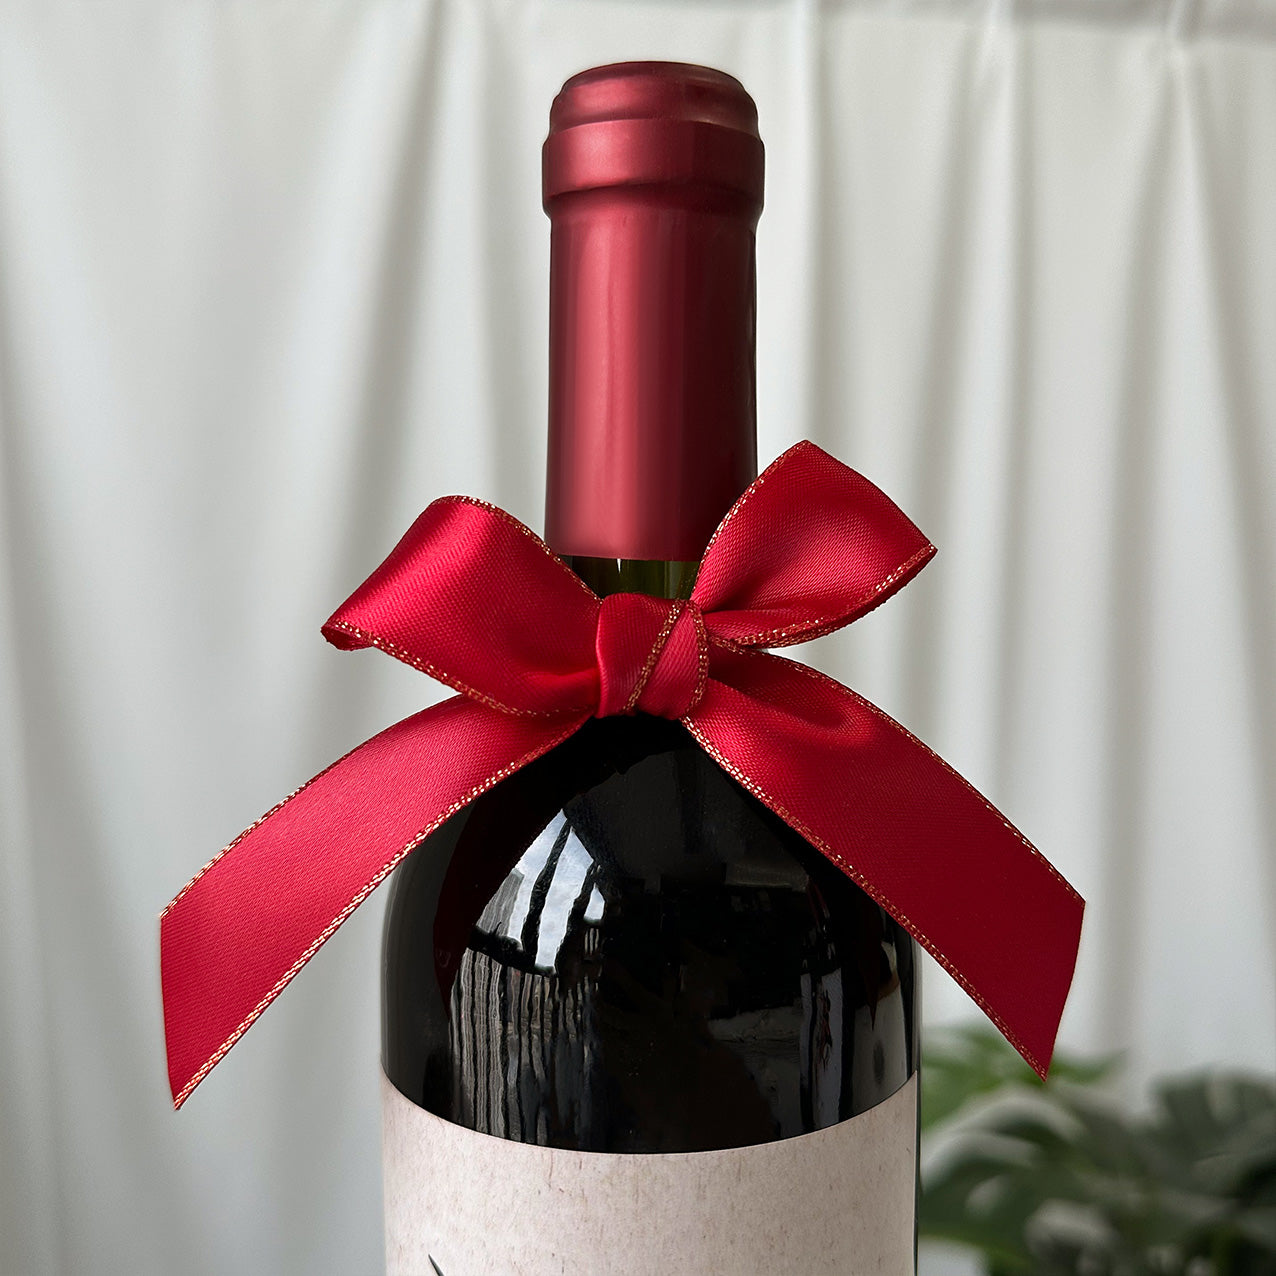 生日禮物 紅酒酒標訂製 生日貼紙署名 慶祝禮物 驚喜創意派對飲料 送男友送朋友 私人訂製 DIY葡萄酒 Birthday Wine Labels DY02-87